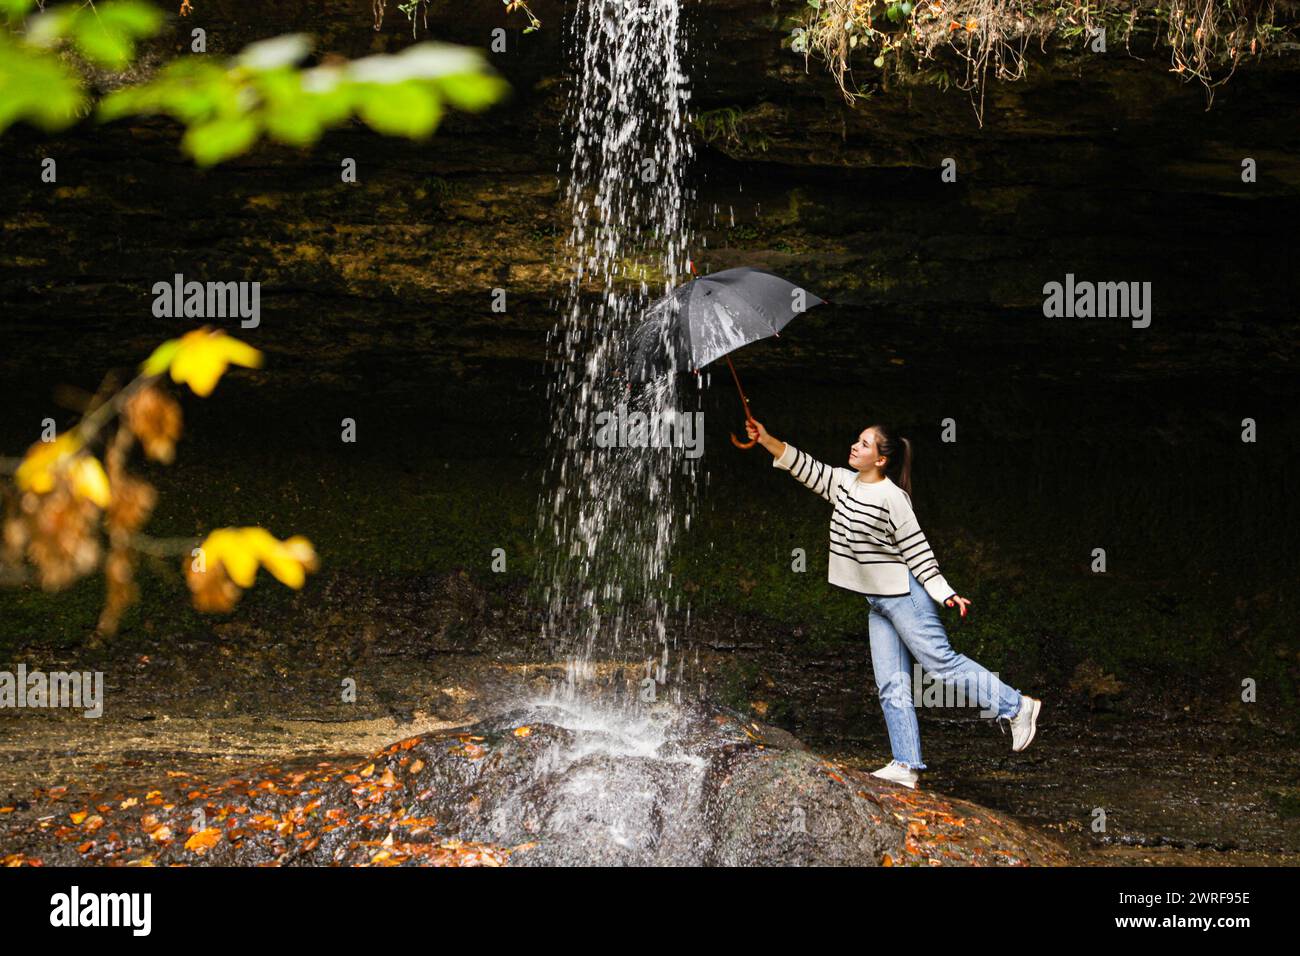 Eine Landschaft mit einem Wasserfall und einem Mädchen, das einen Schirm in einer ungewöhnlichen Position hält und ihn unter das Wasser stellen will, das aus dem Wasserfall fließt. A b Stockfoto